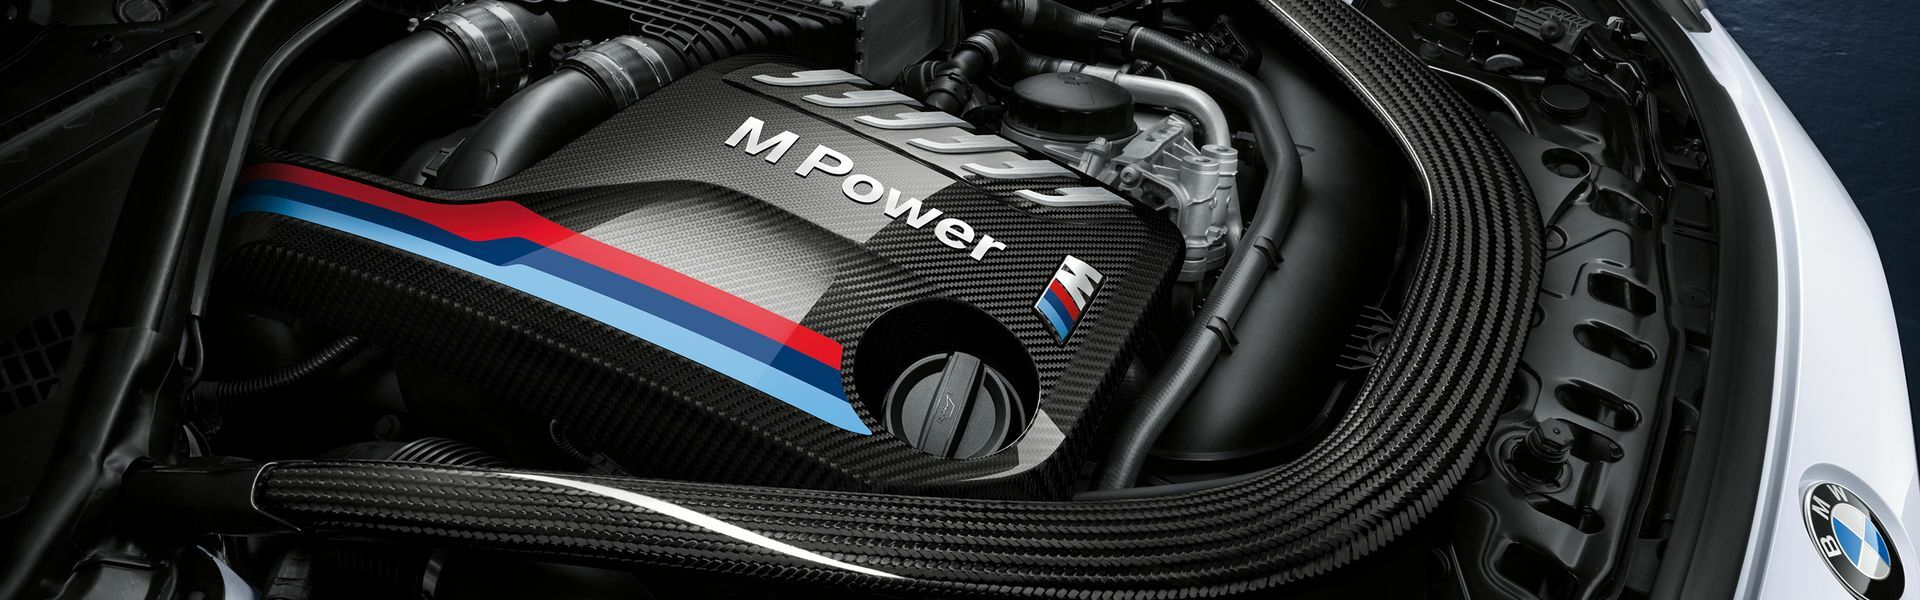 Zvýšení výkonu/ Softwarové úpravy/ Drobné performance díly pro automobil Porsche Macan S 95B